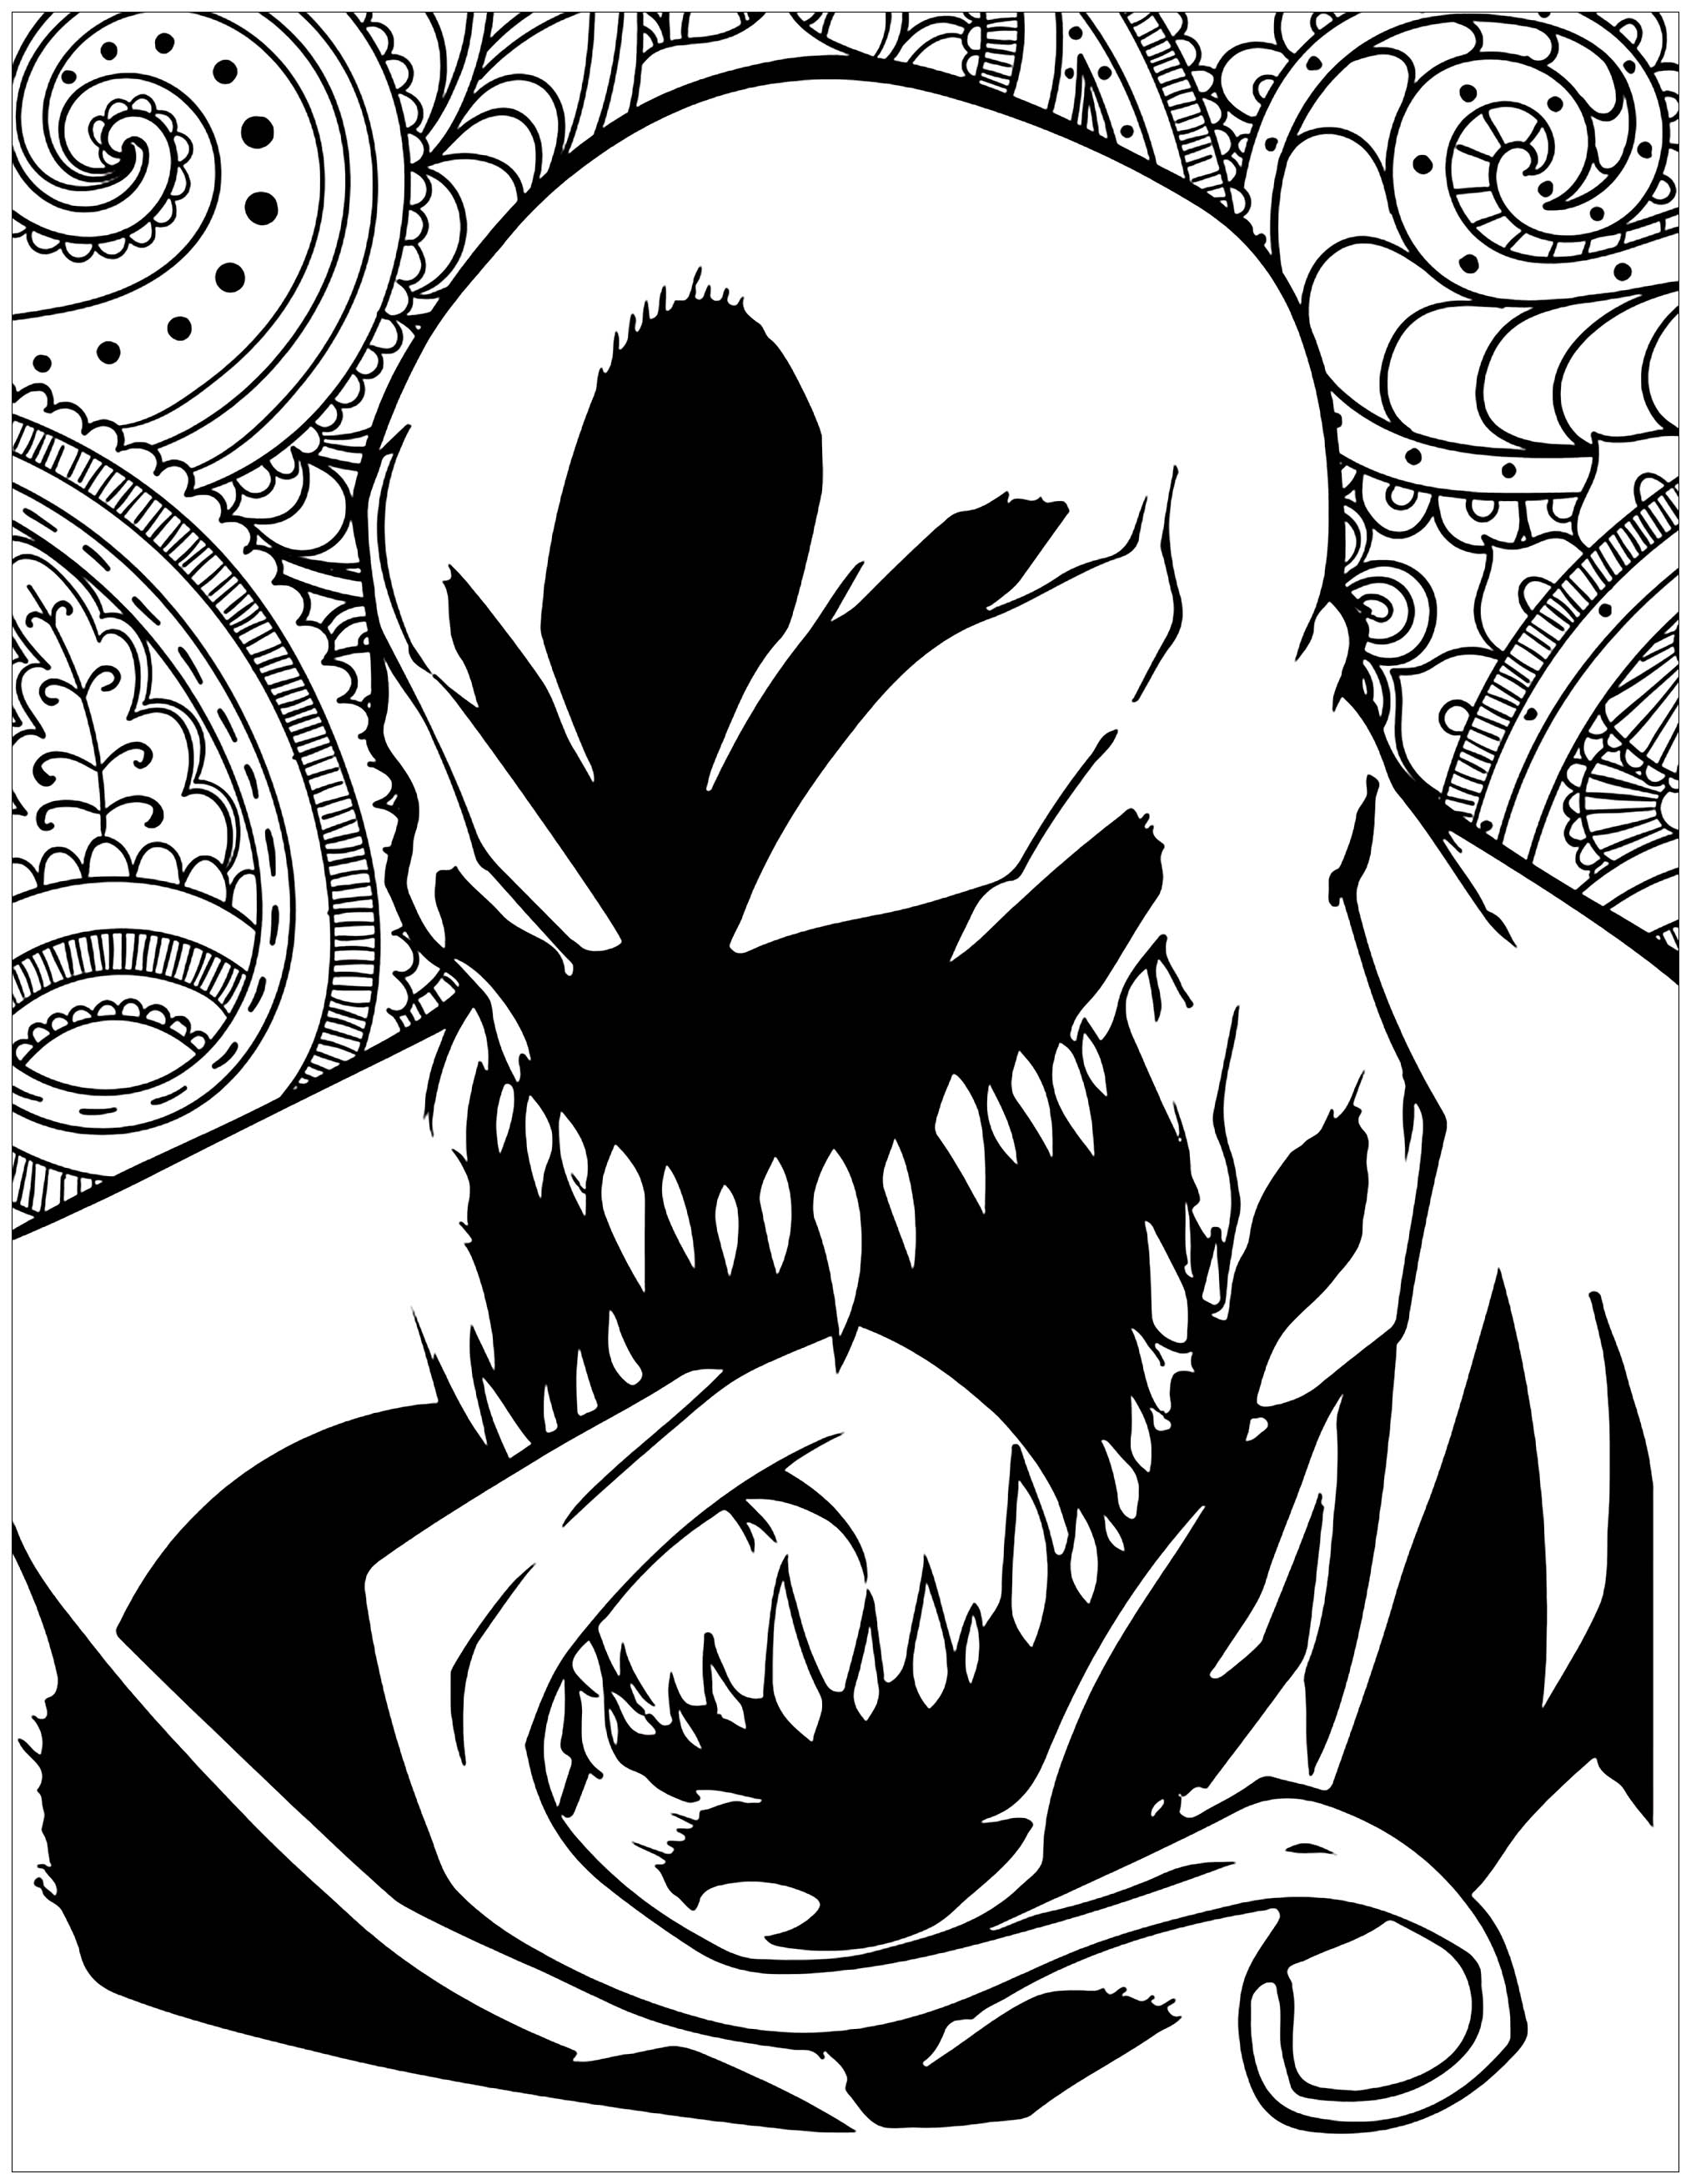 venom coloring page